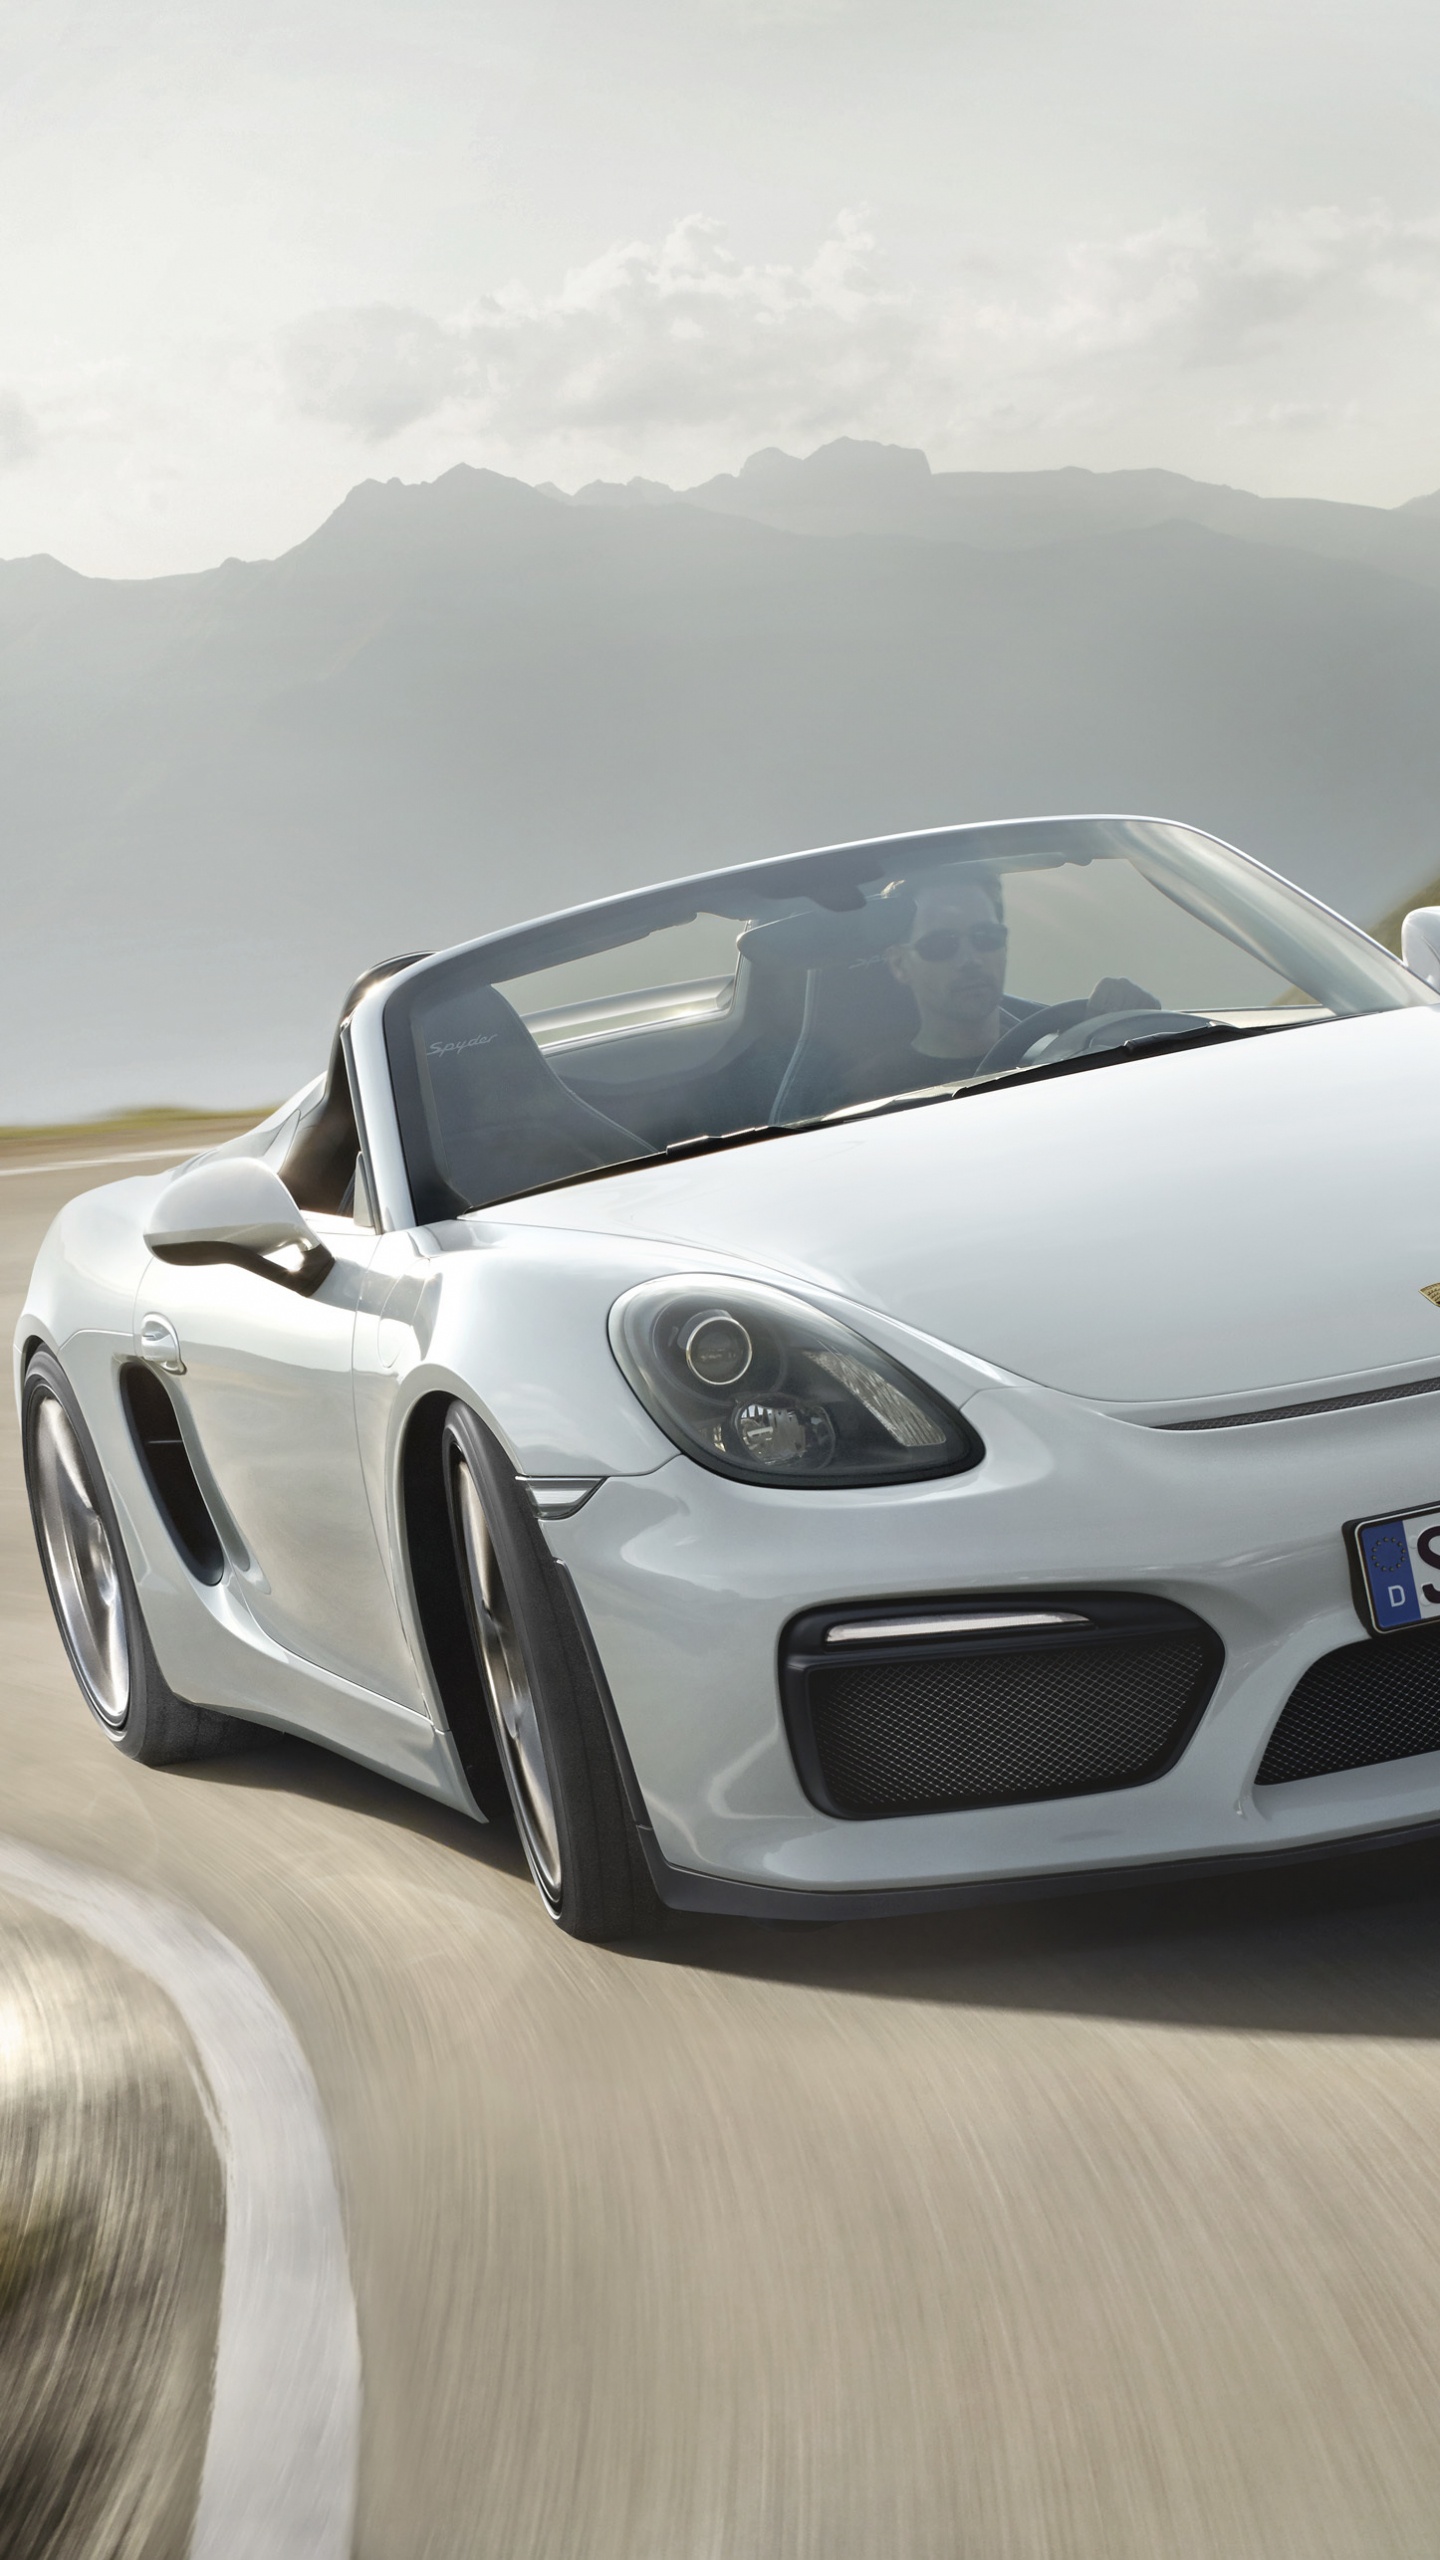 Porsche 911 Blanco en la Carretera Durante el Día. Wallpaper in 1440x2560 Resolution